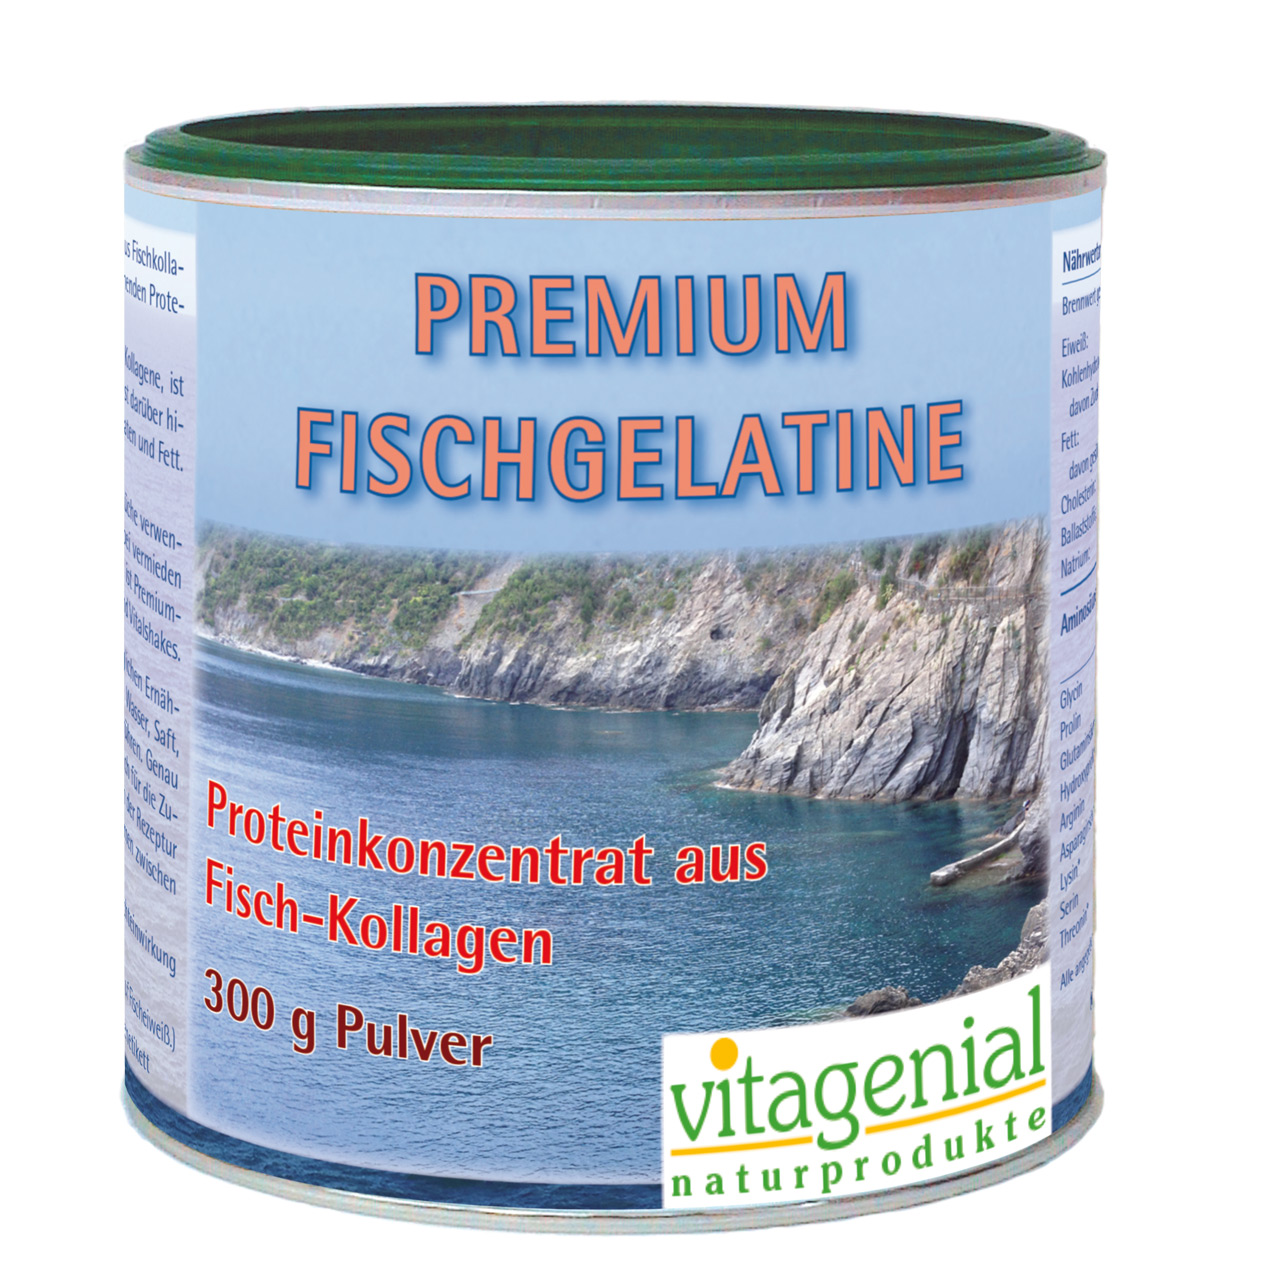 Vitagenial Premium Fischgelatine in 300 Gramm Version